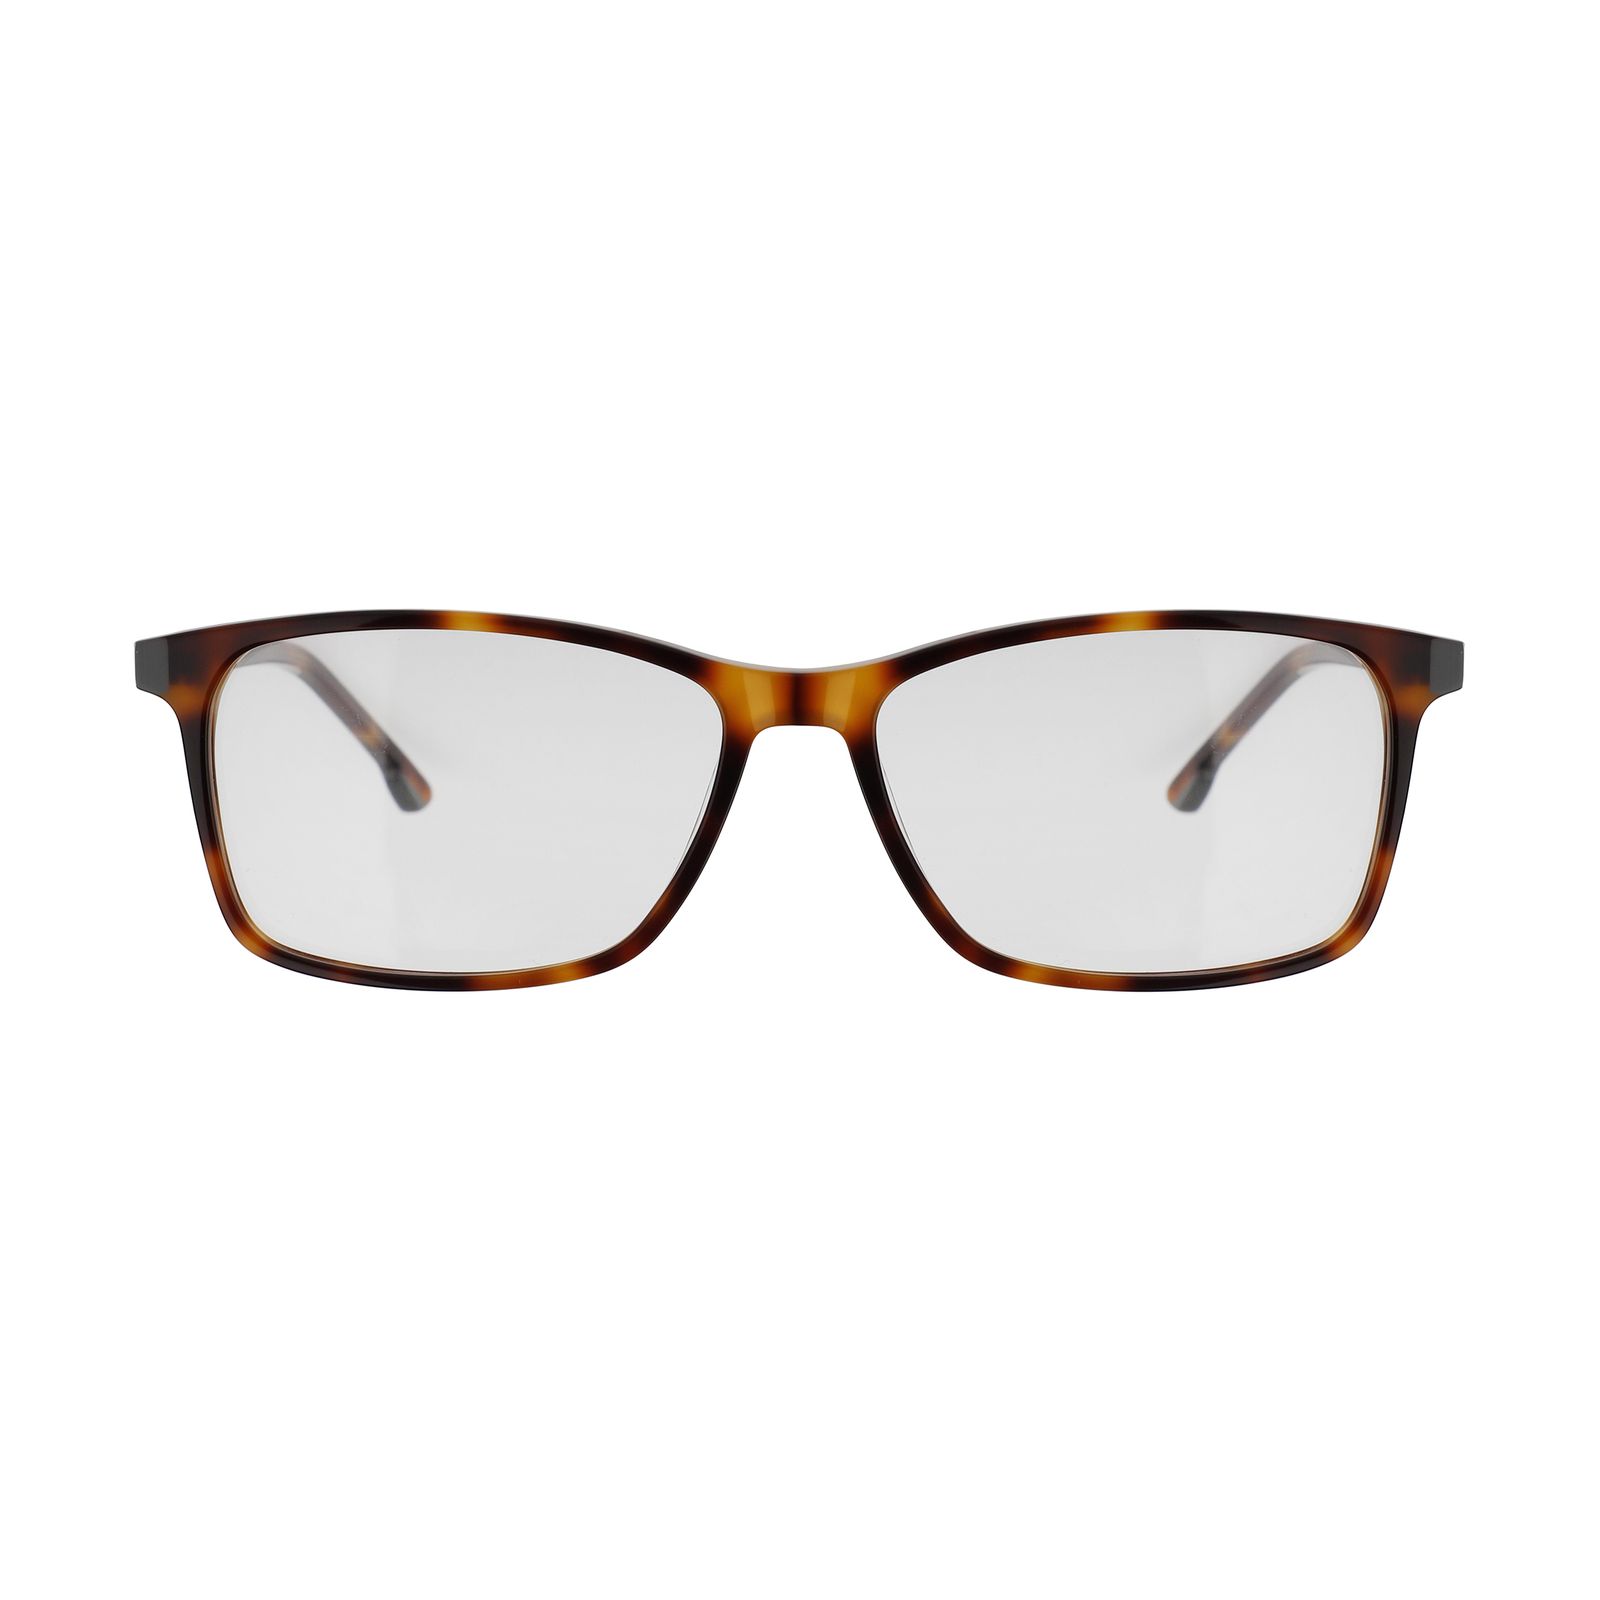 فریم عینک طبی تام تیلور مدل 60463-414 -  - 1